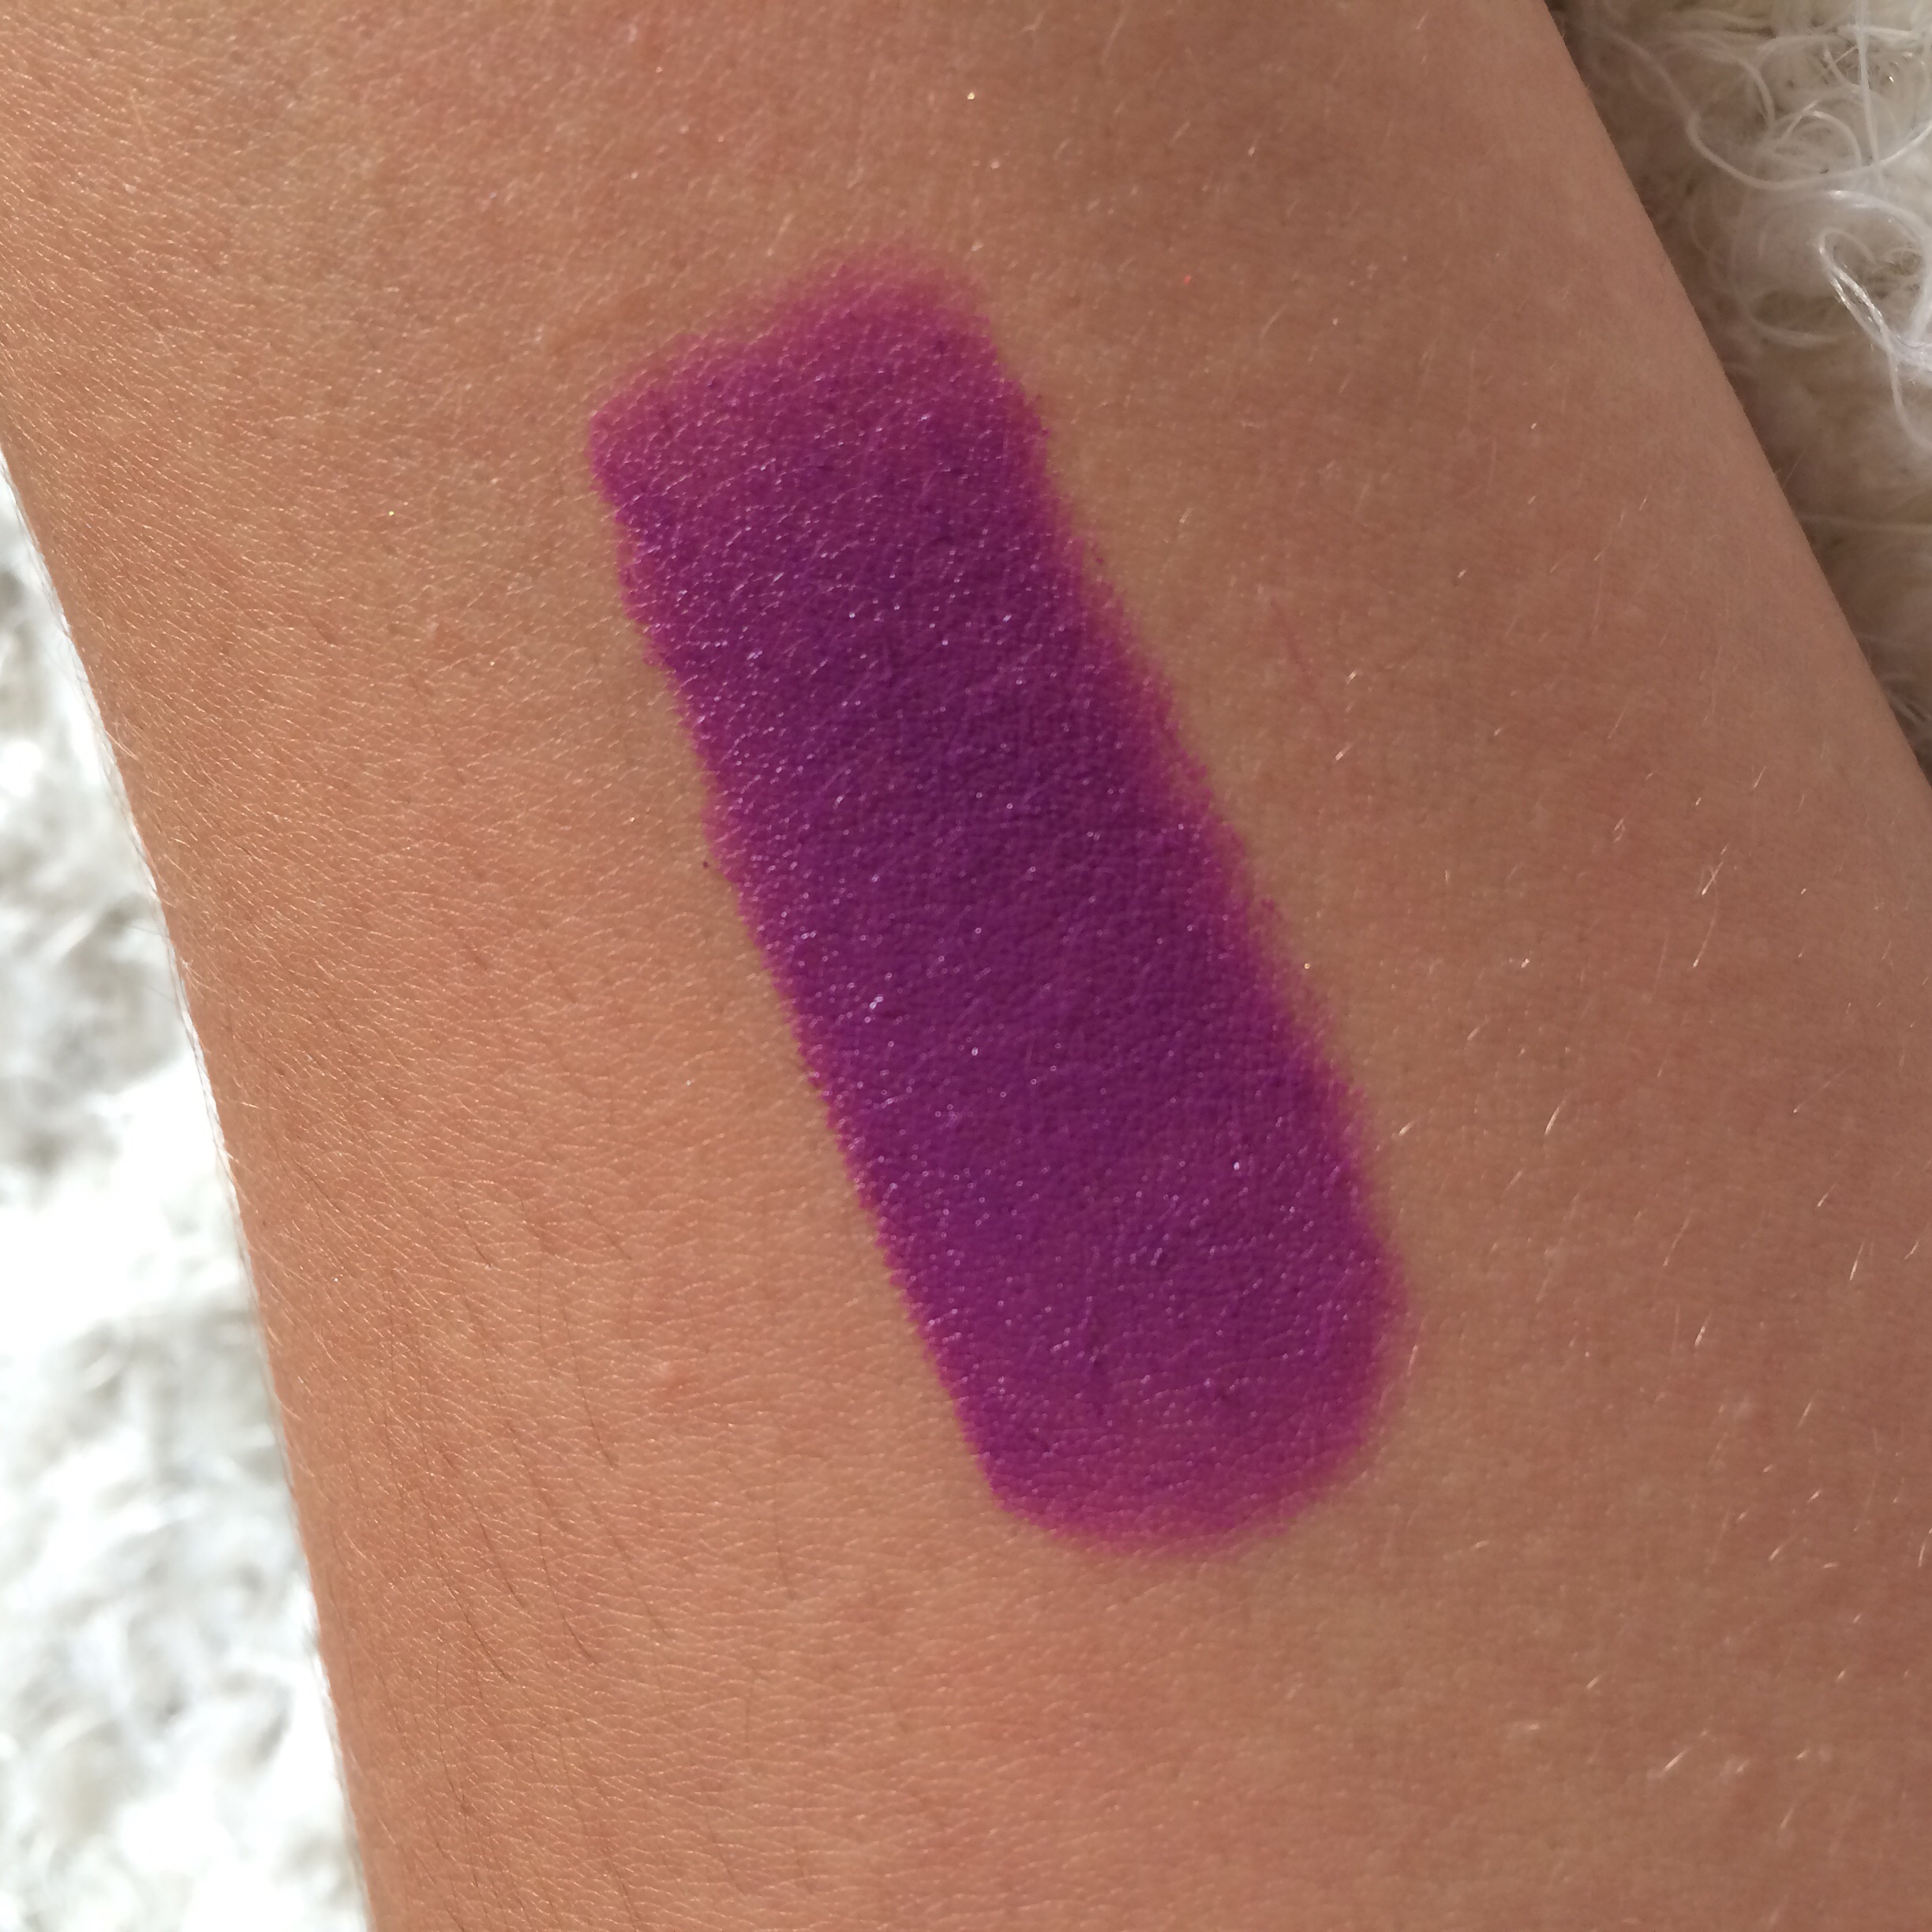 Top 10 MAC Lipsticks — Brittany Laurén